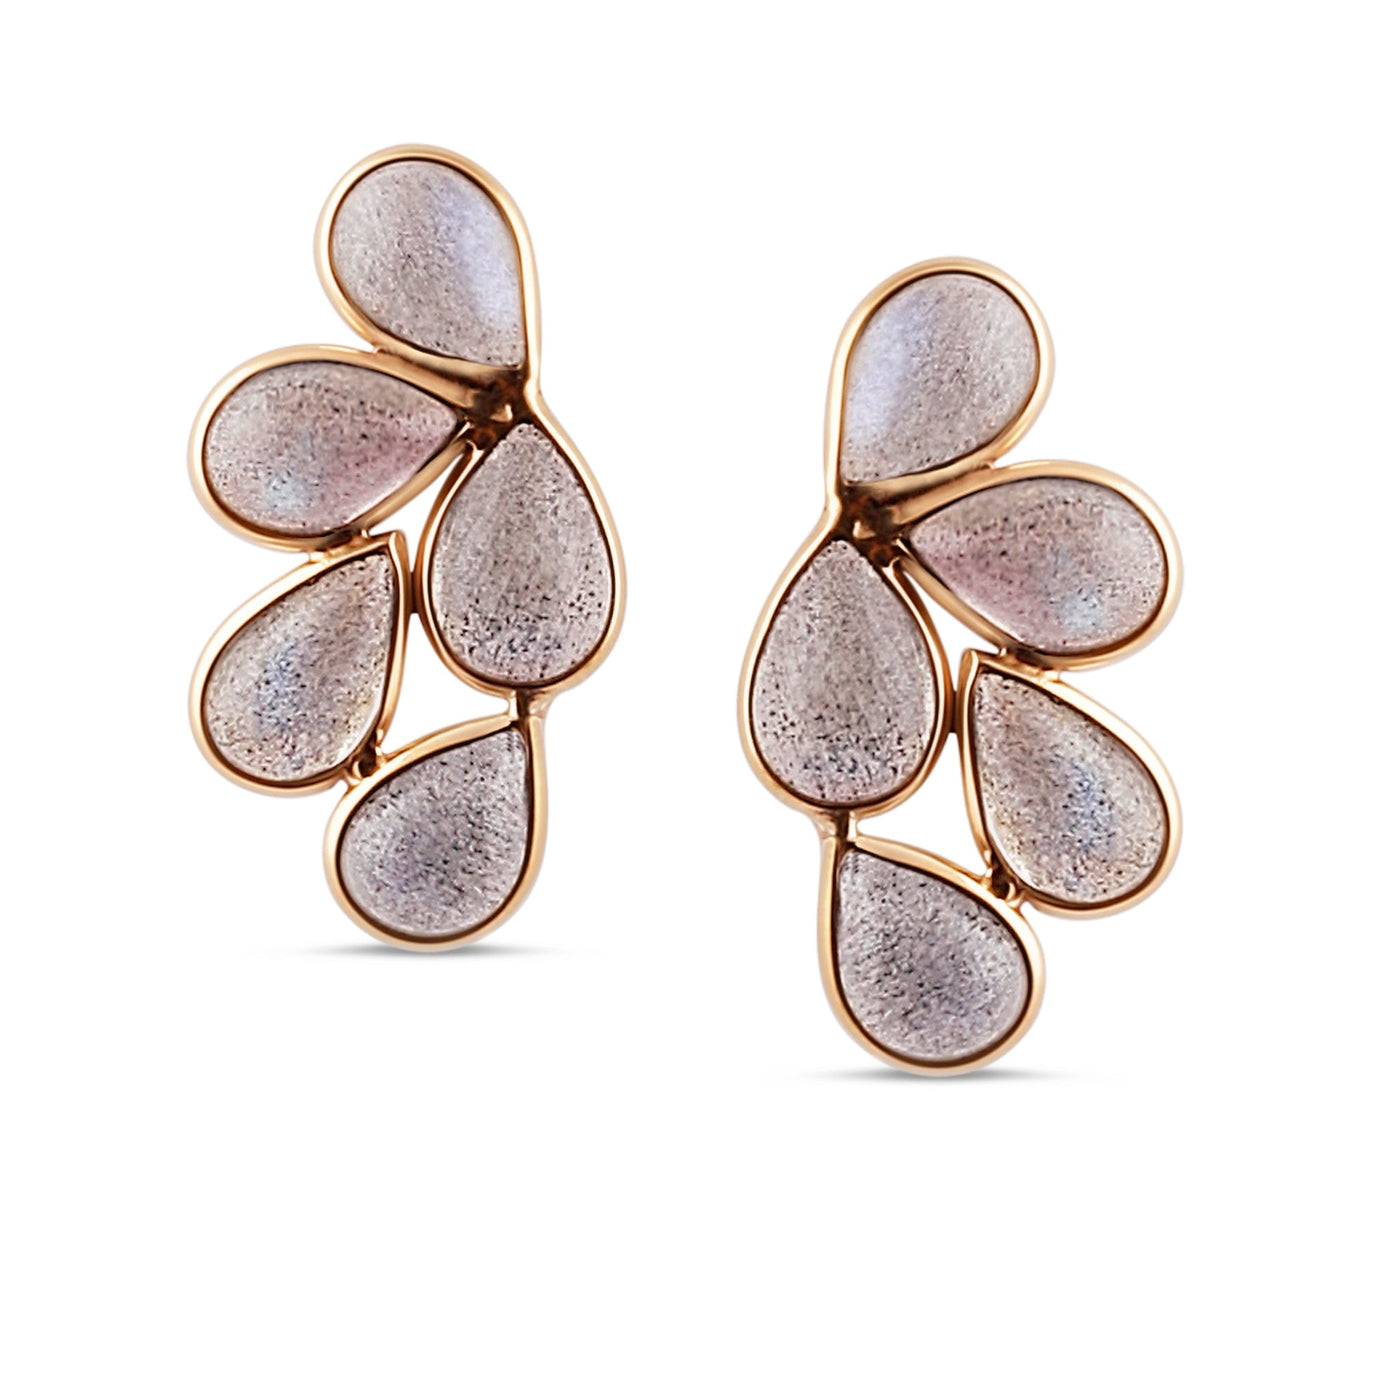 Gemstone Butterfly Stud Earrings in 18K Yellow Gold